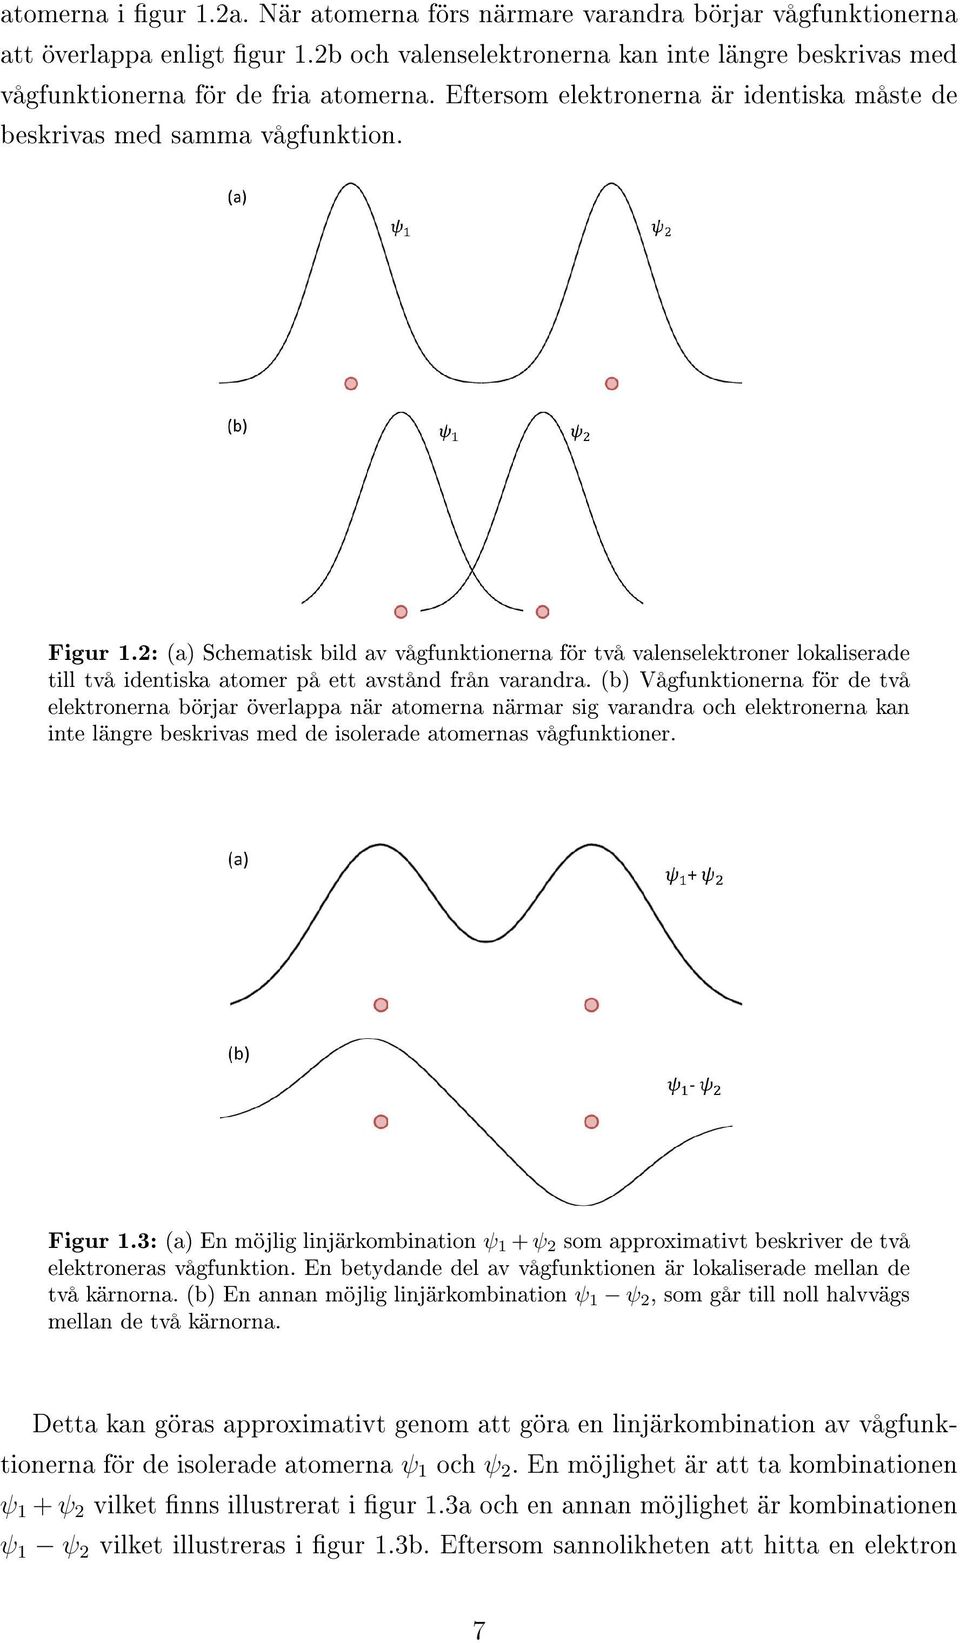 2: (a) Schematisk bild av vågfunktionerna för två valenselektroner lokaliserade till två identiska atomer på ett avstånd från varandra.